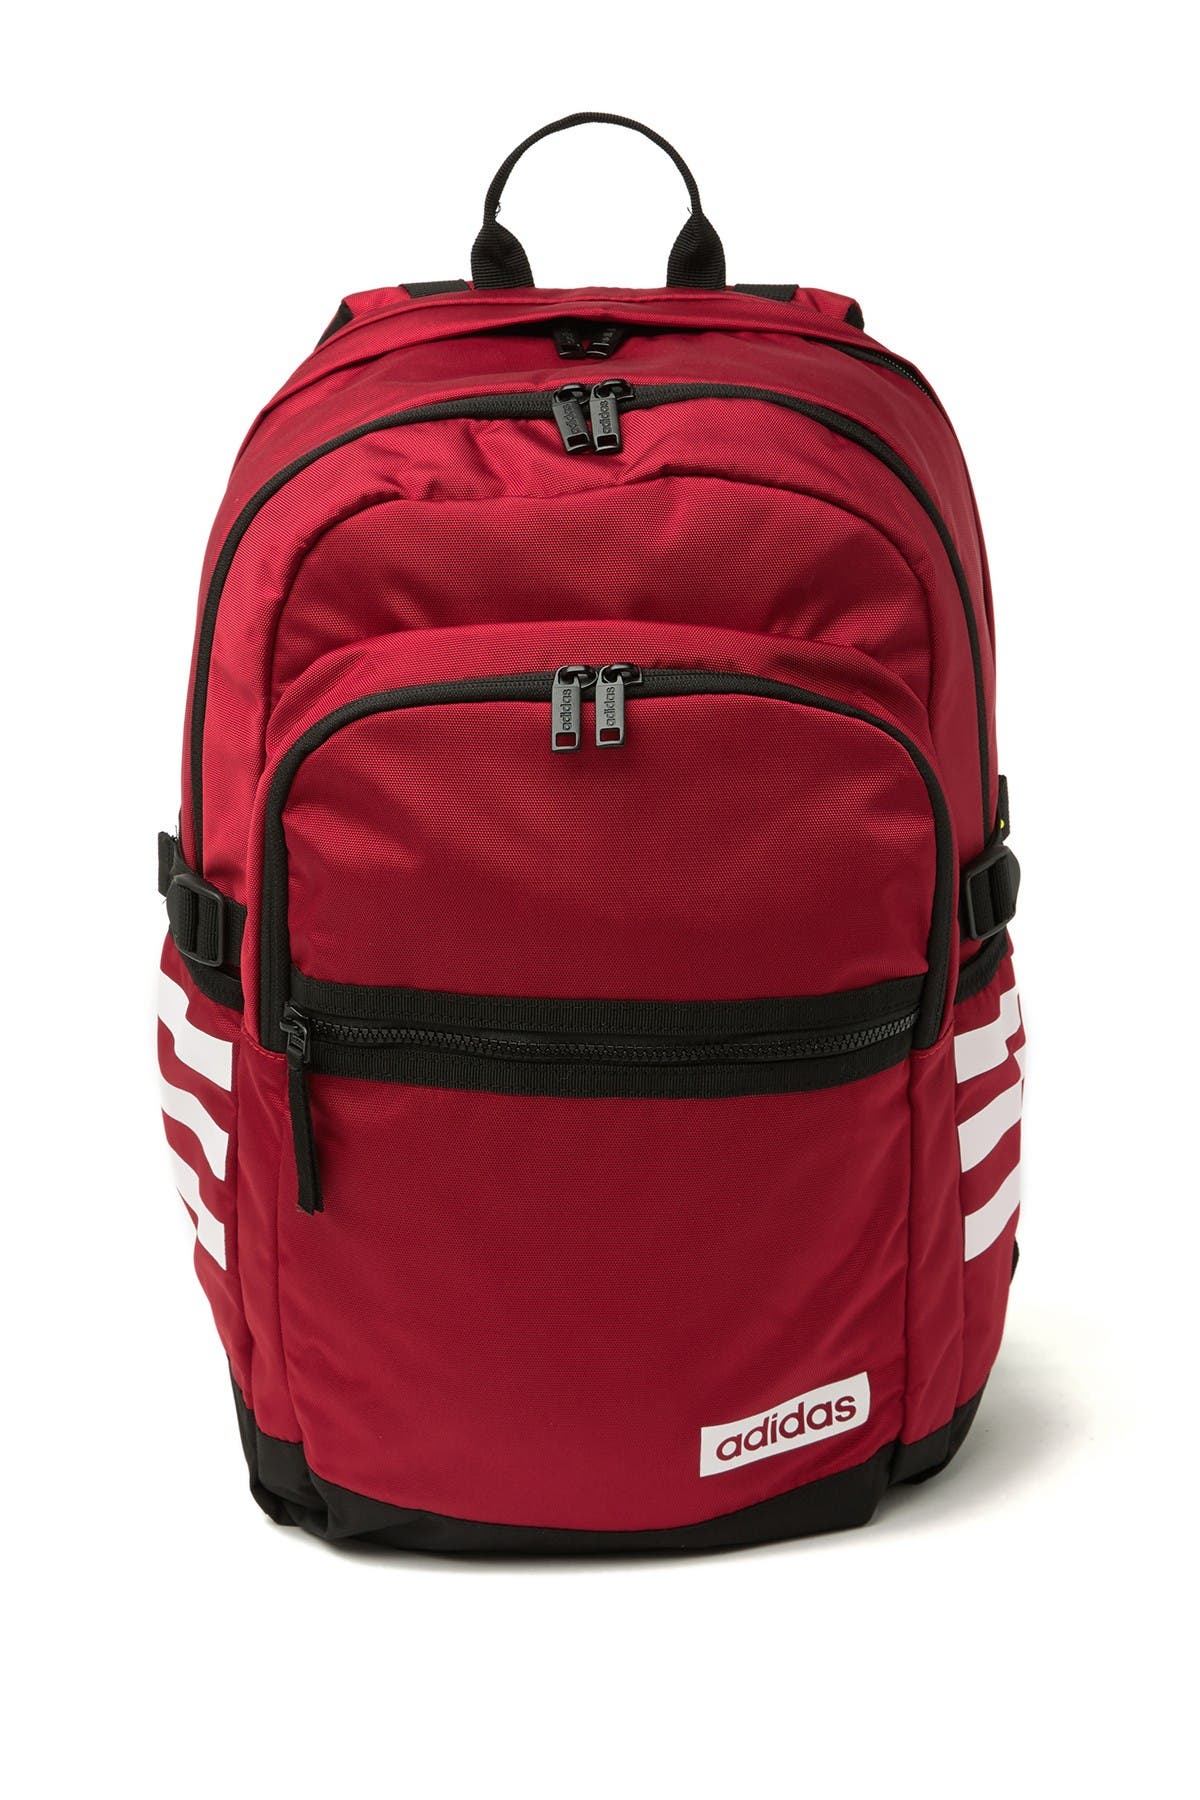 adidas core advantage 2 backpack